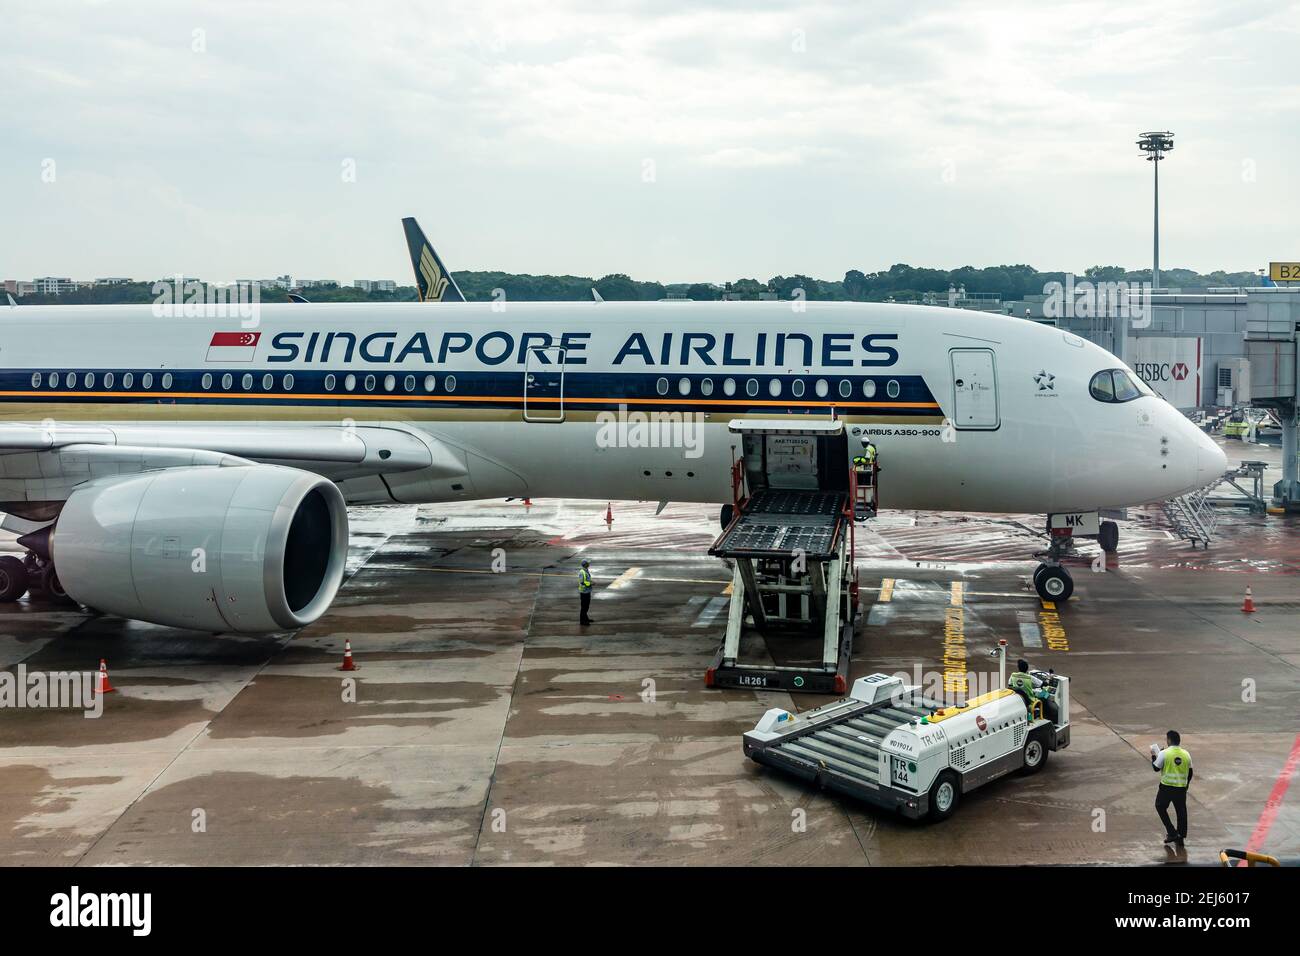 Un cargador ULD que eleva un dispositivo de carga unitaria (ULD) desde Delantal se extiende a una bahía de carga de aviones de Singapur Máquina de líneas aéreas en el aeropuerto Changi de Singapur Foto de stock